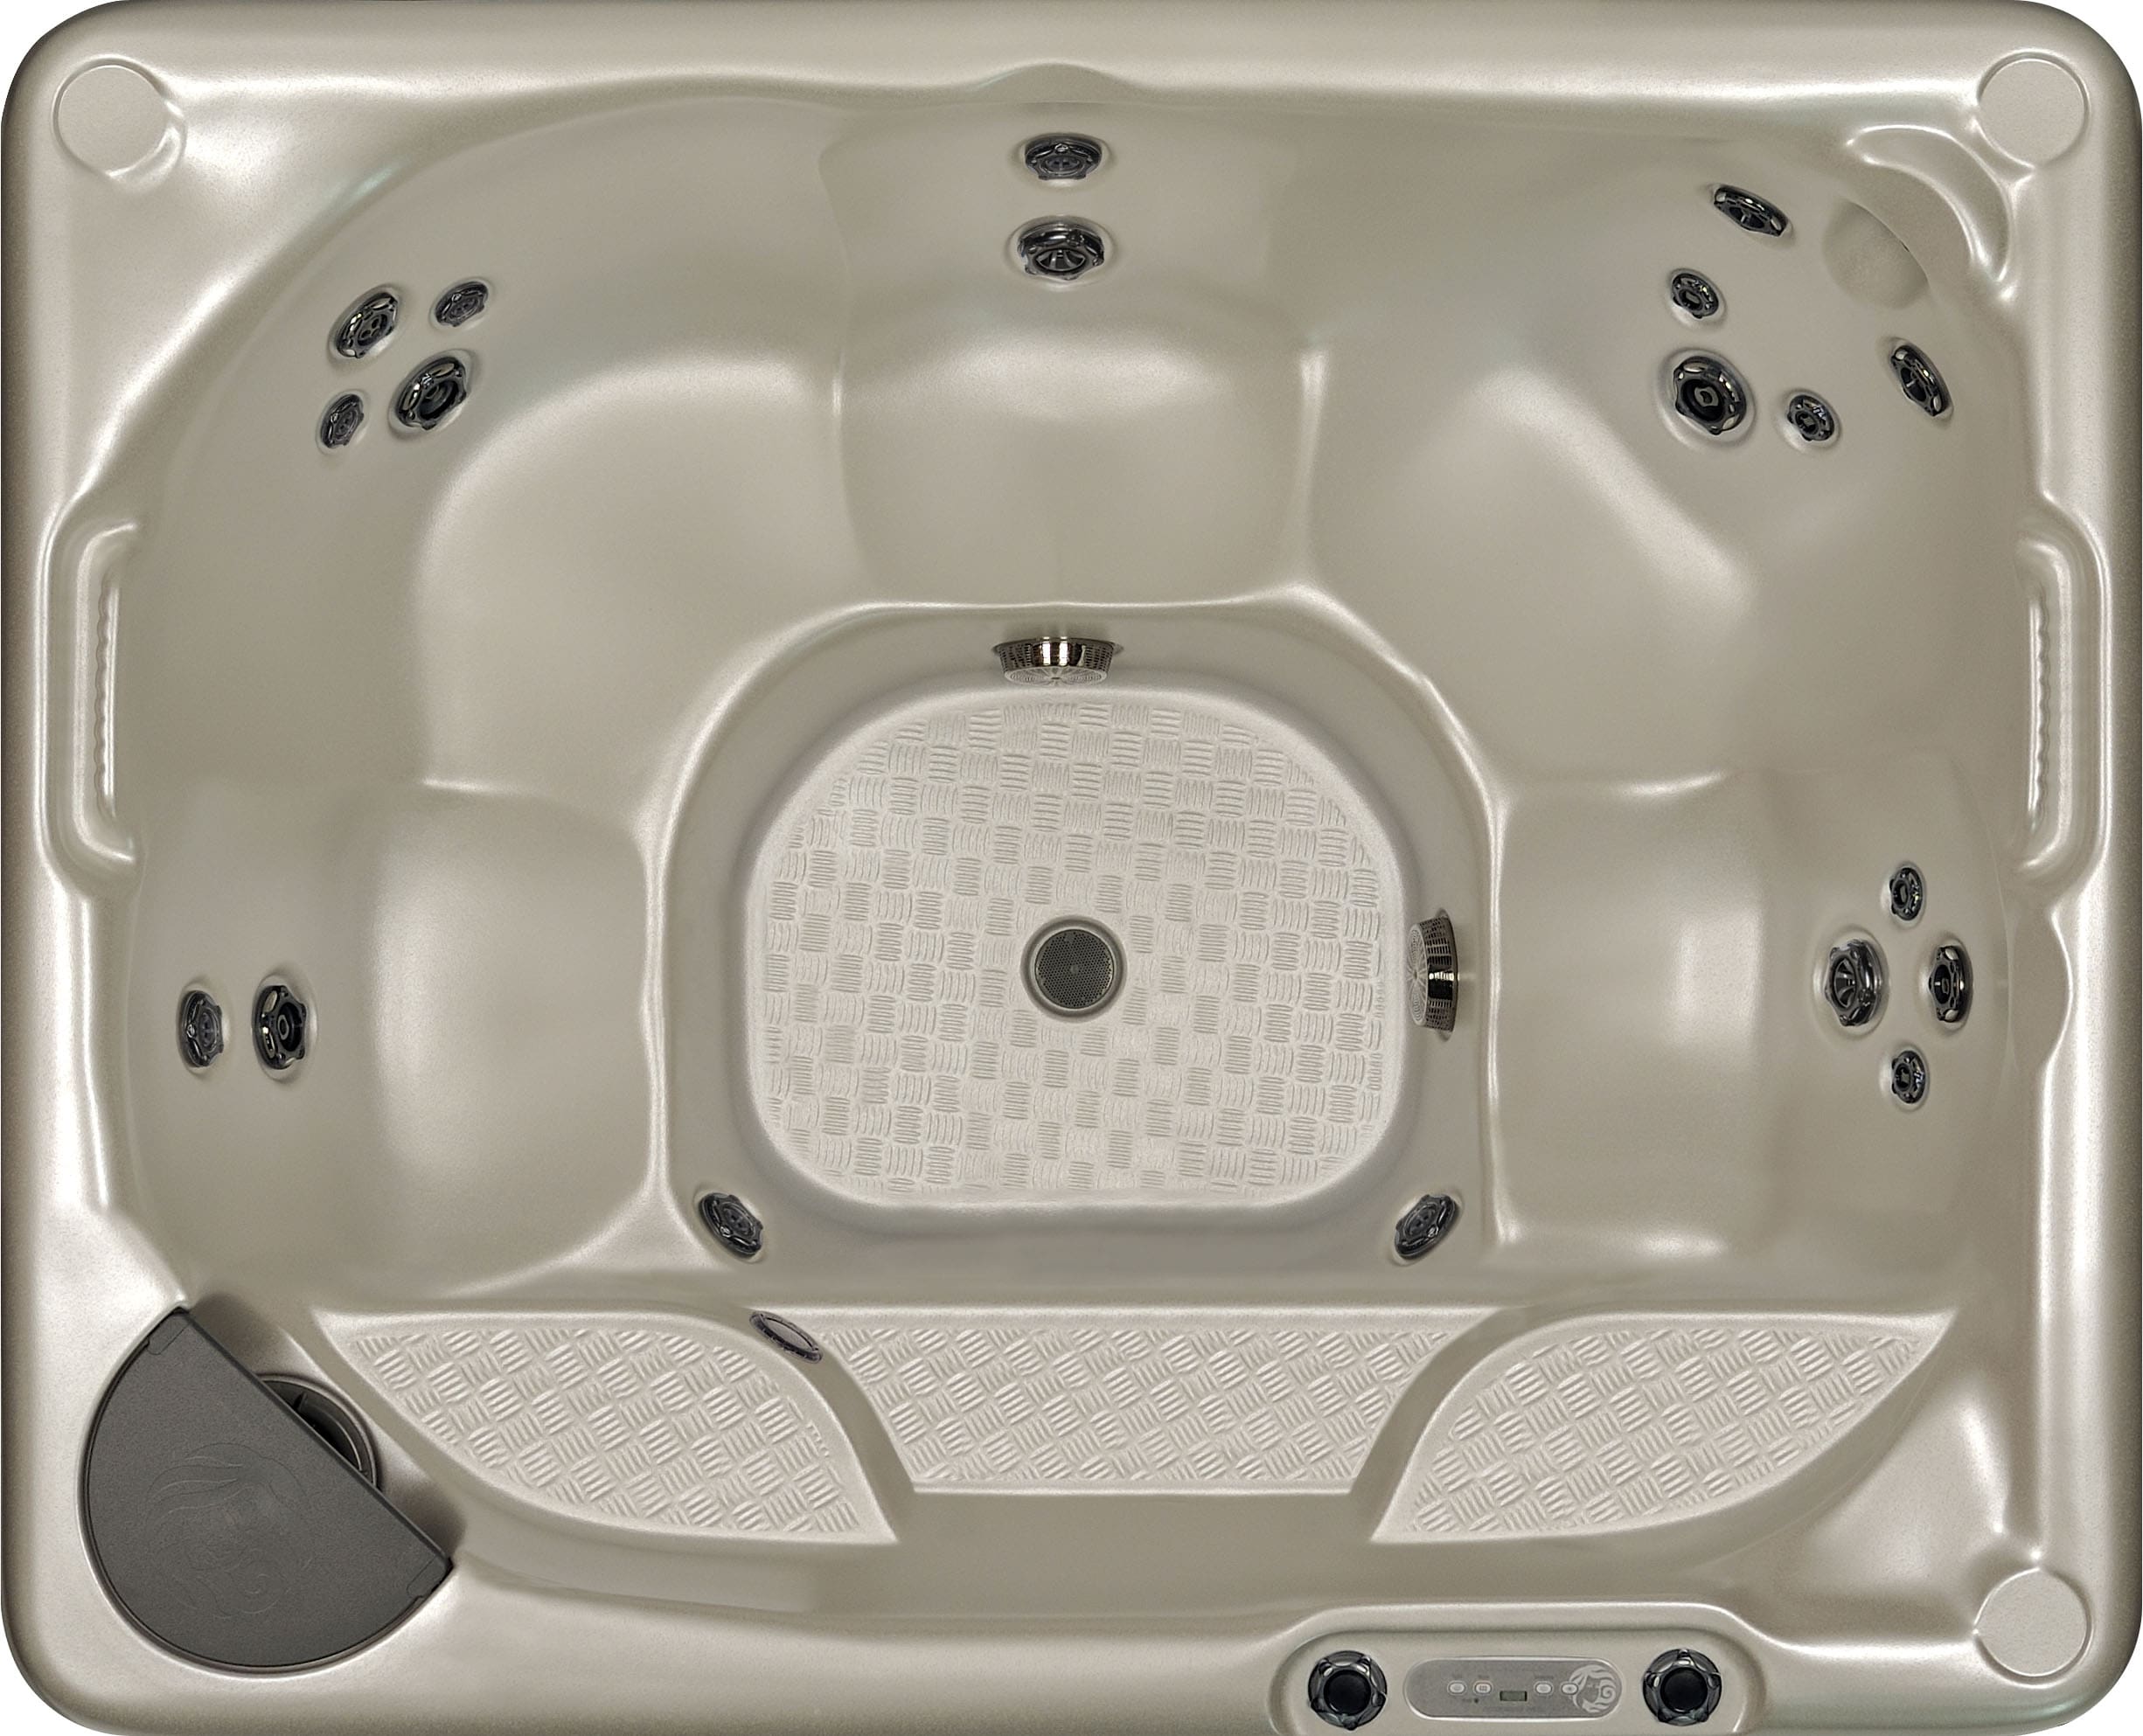 Large Luxury hot tub